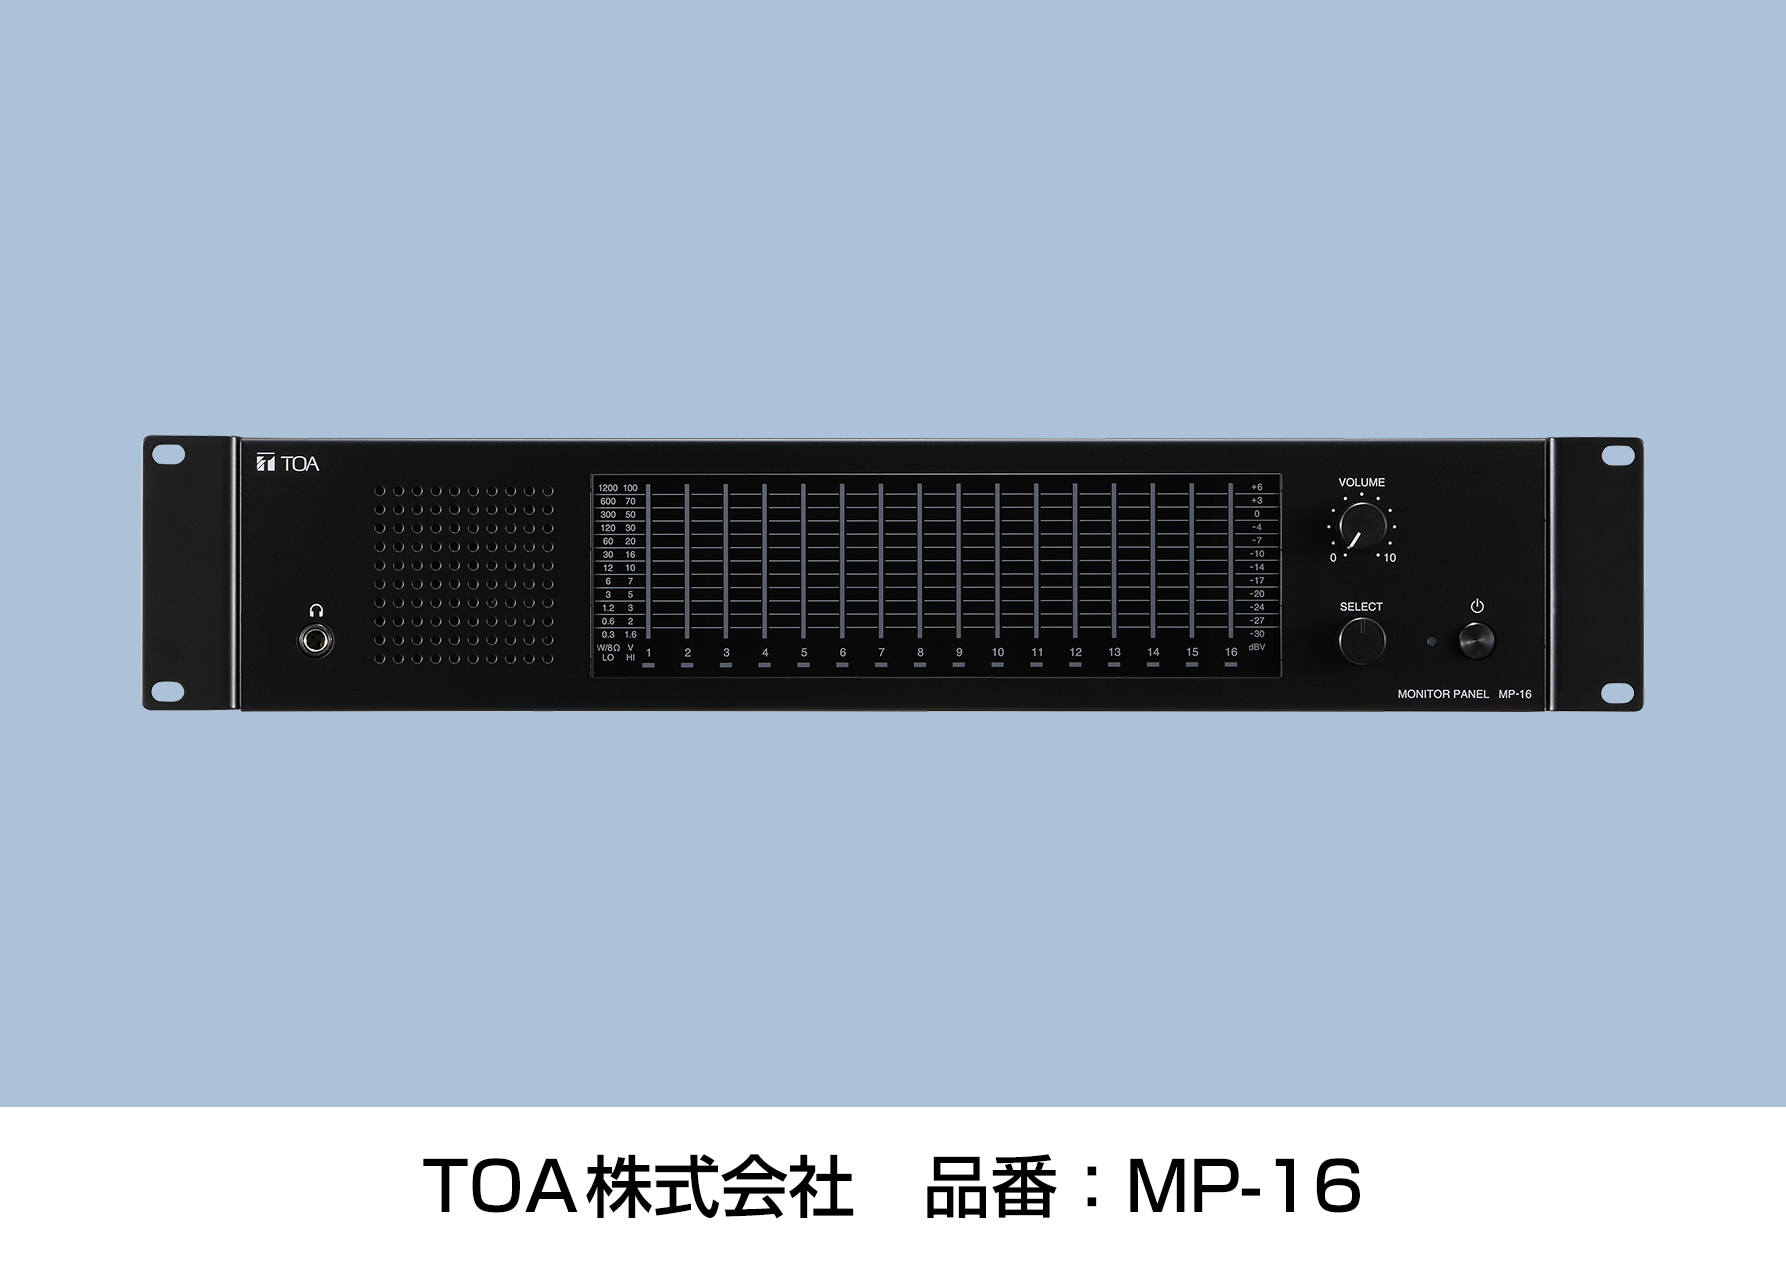 モニターパネル 16CHをリニューアル発売 | TOA - Sound and Communication